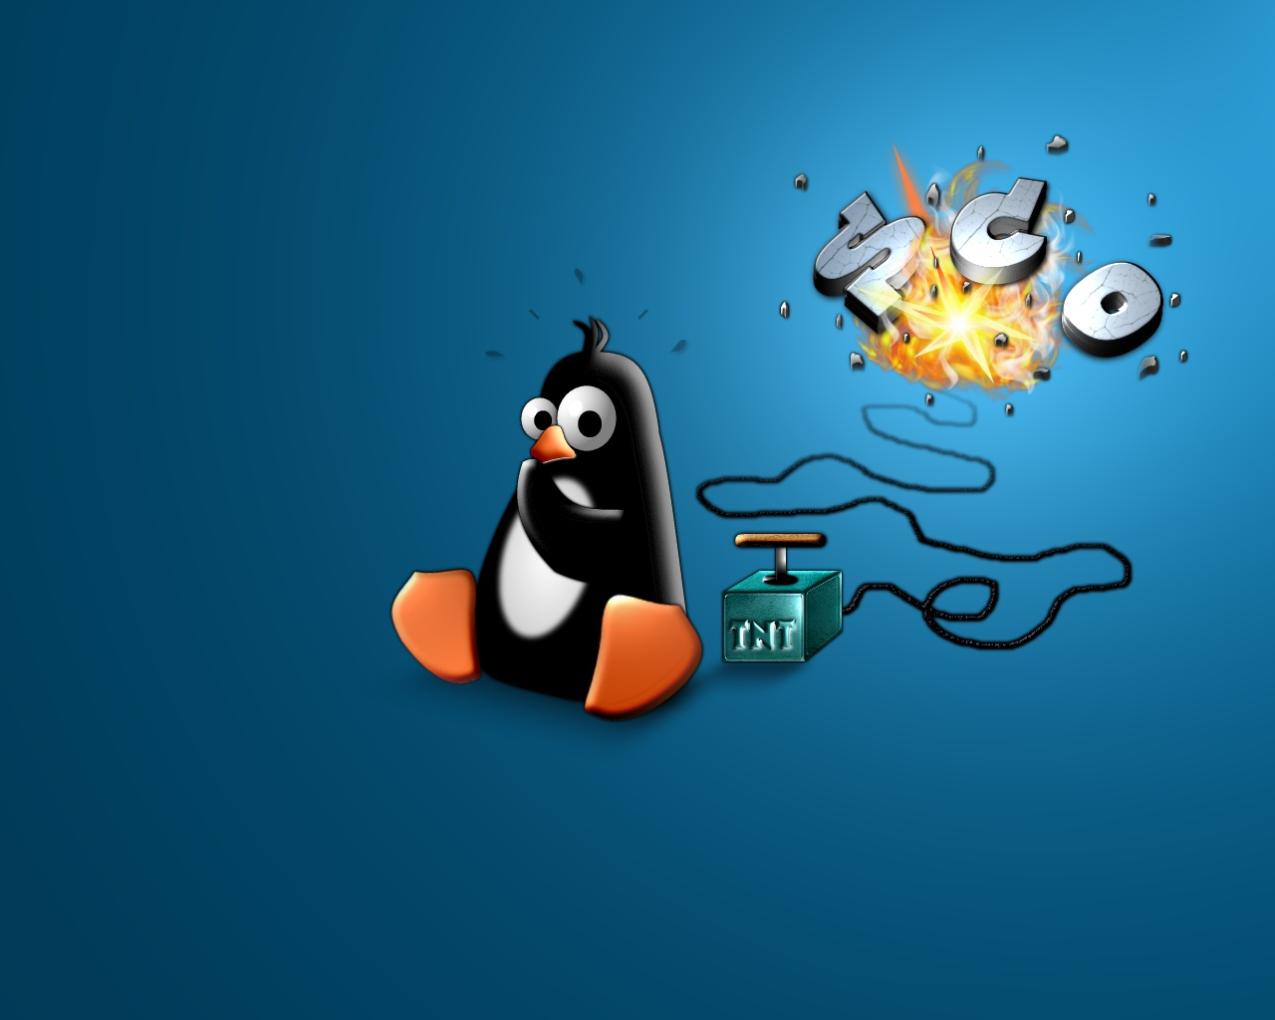 Quali sono i comandi più importanti da riga di comando di Linux per l'amministrazione di sistema?